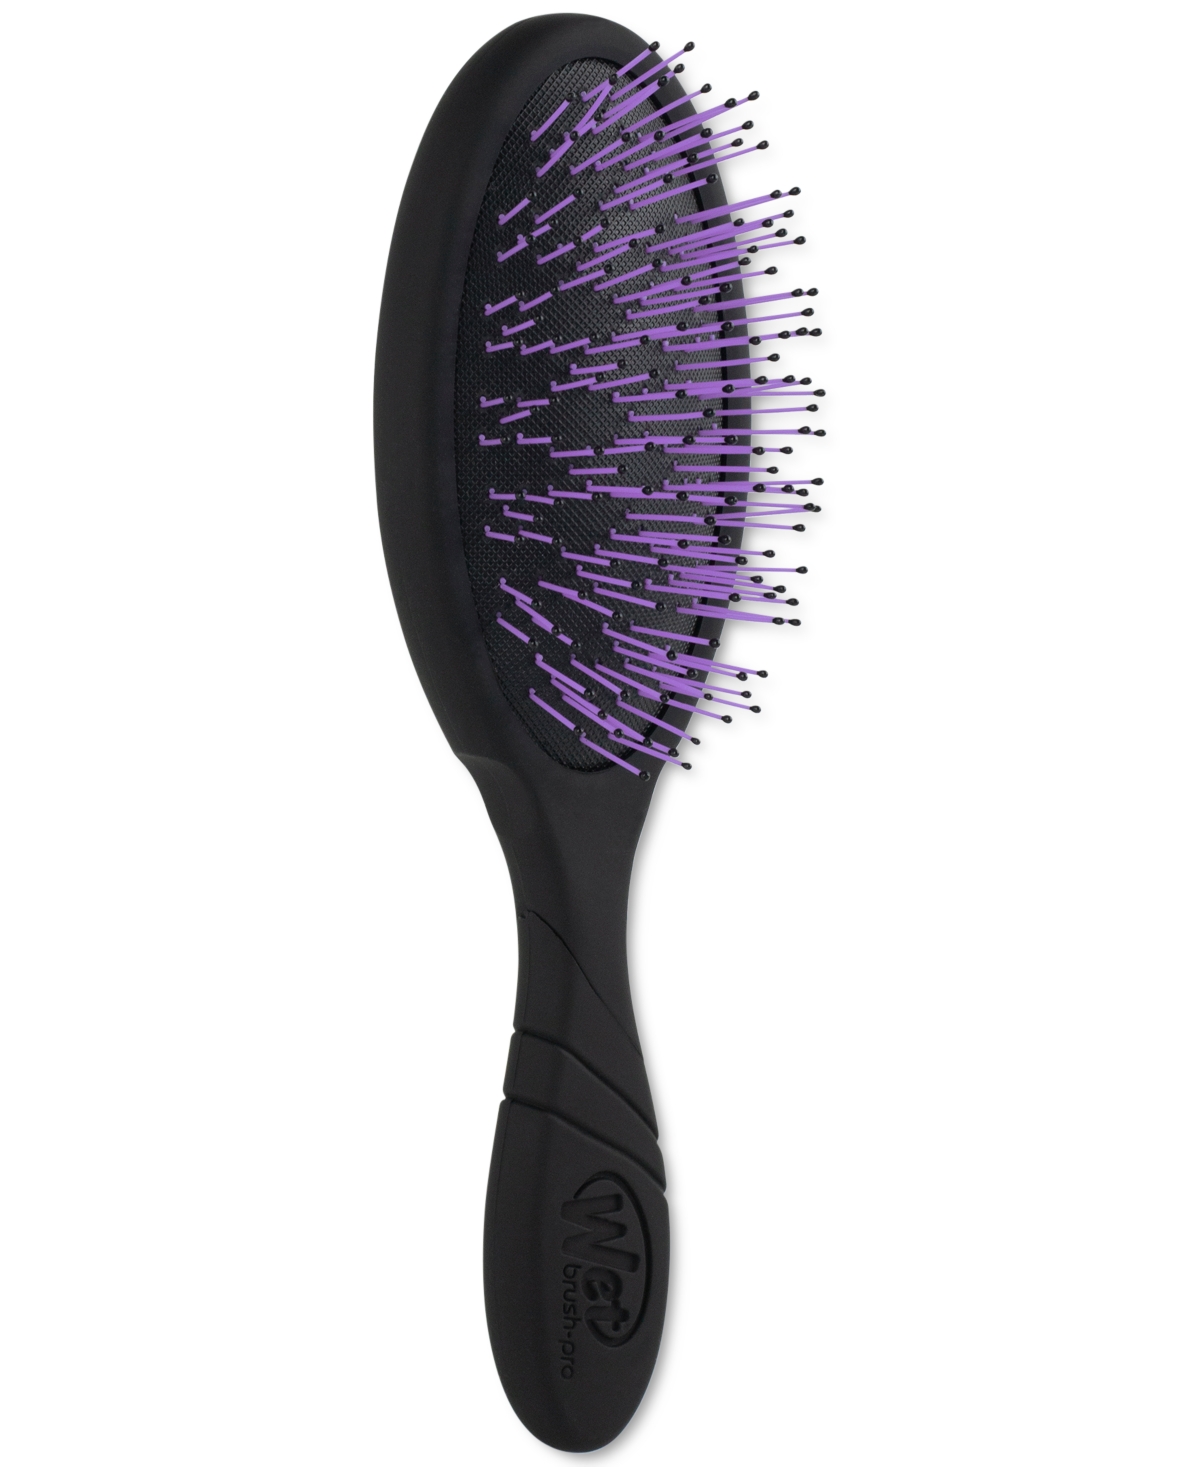 Pro Detangler Thick Hair Brush - Black